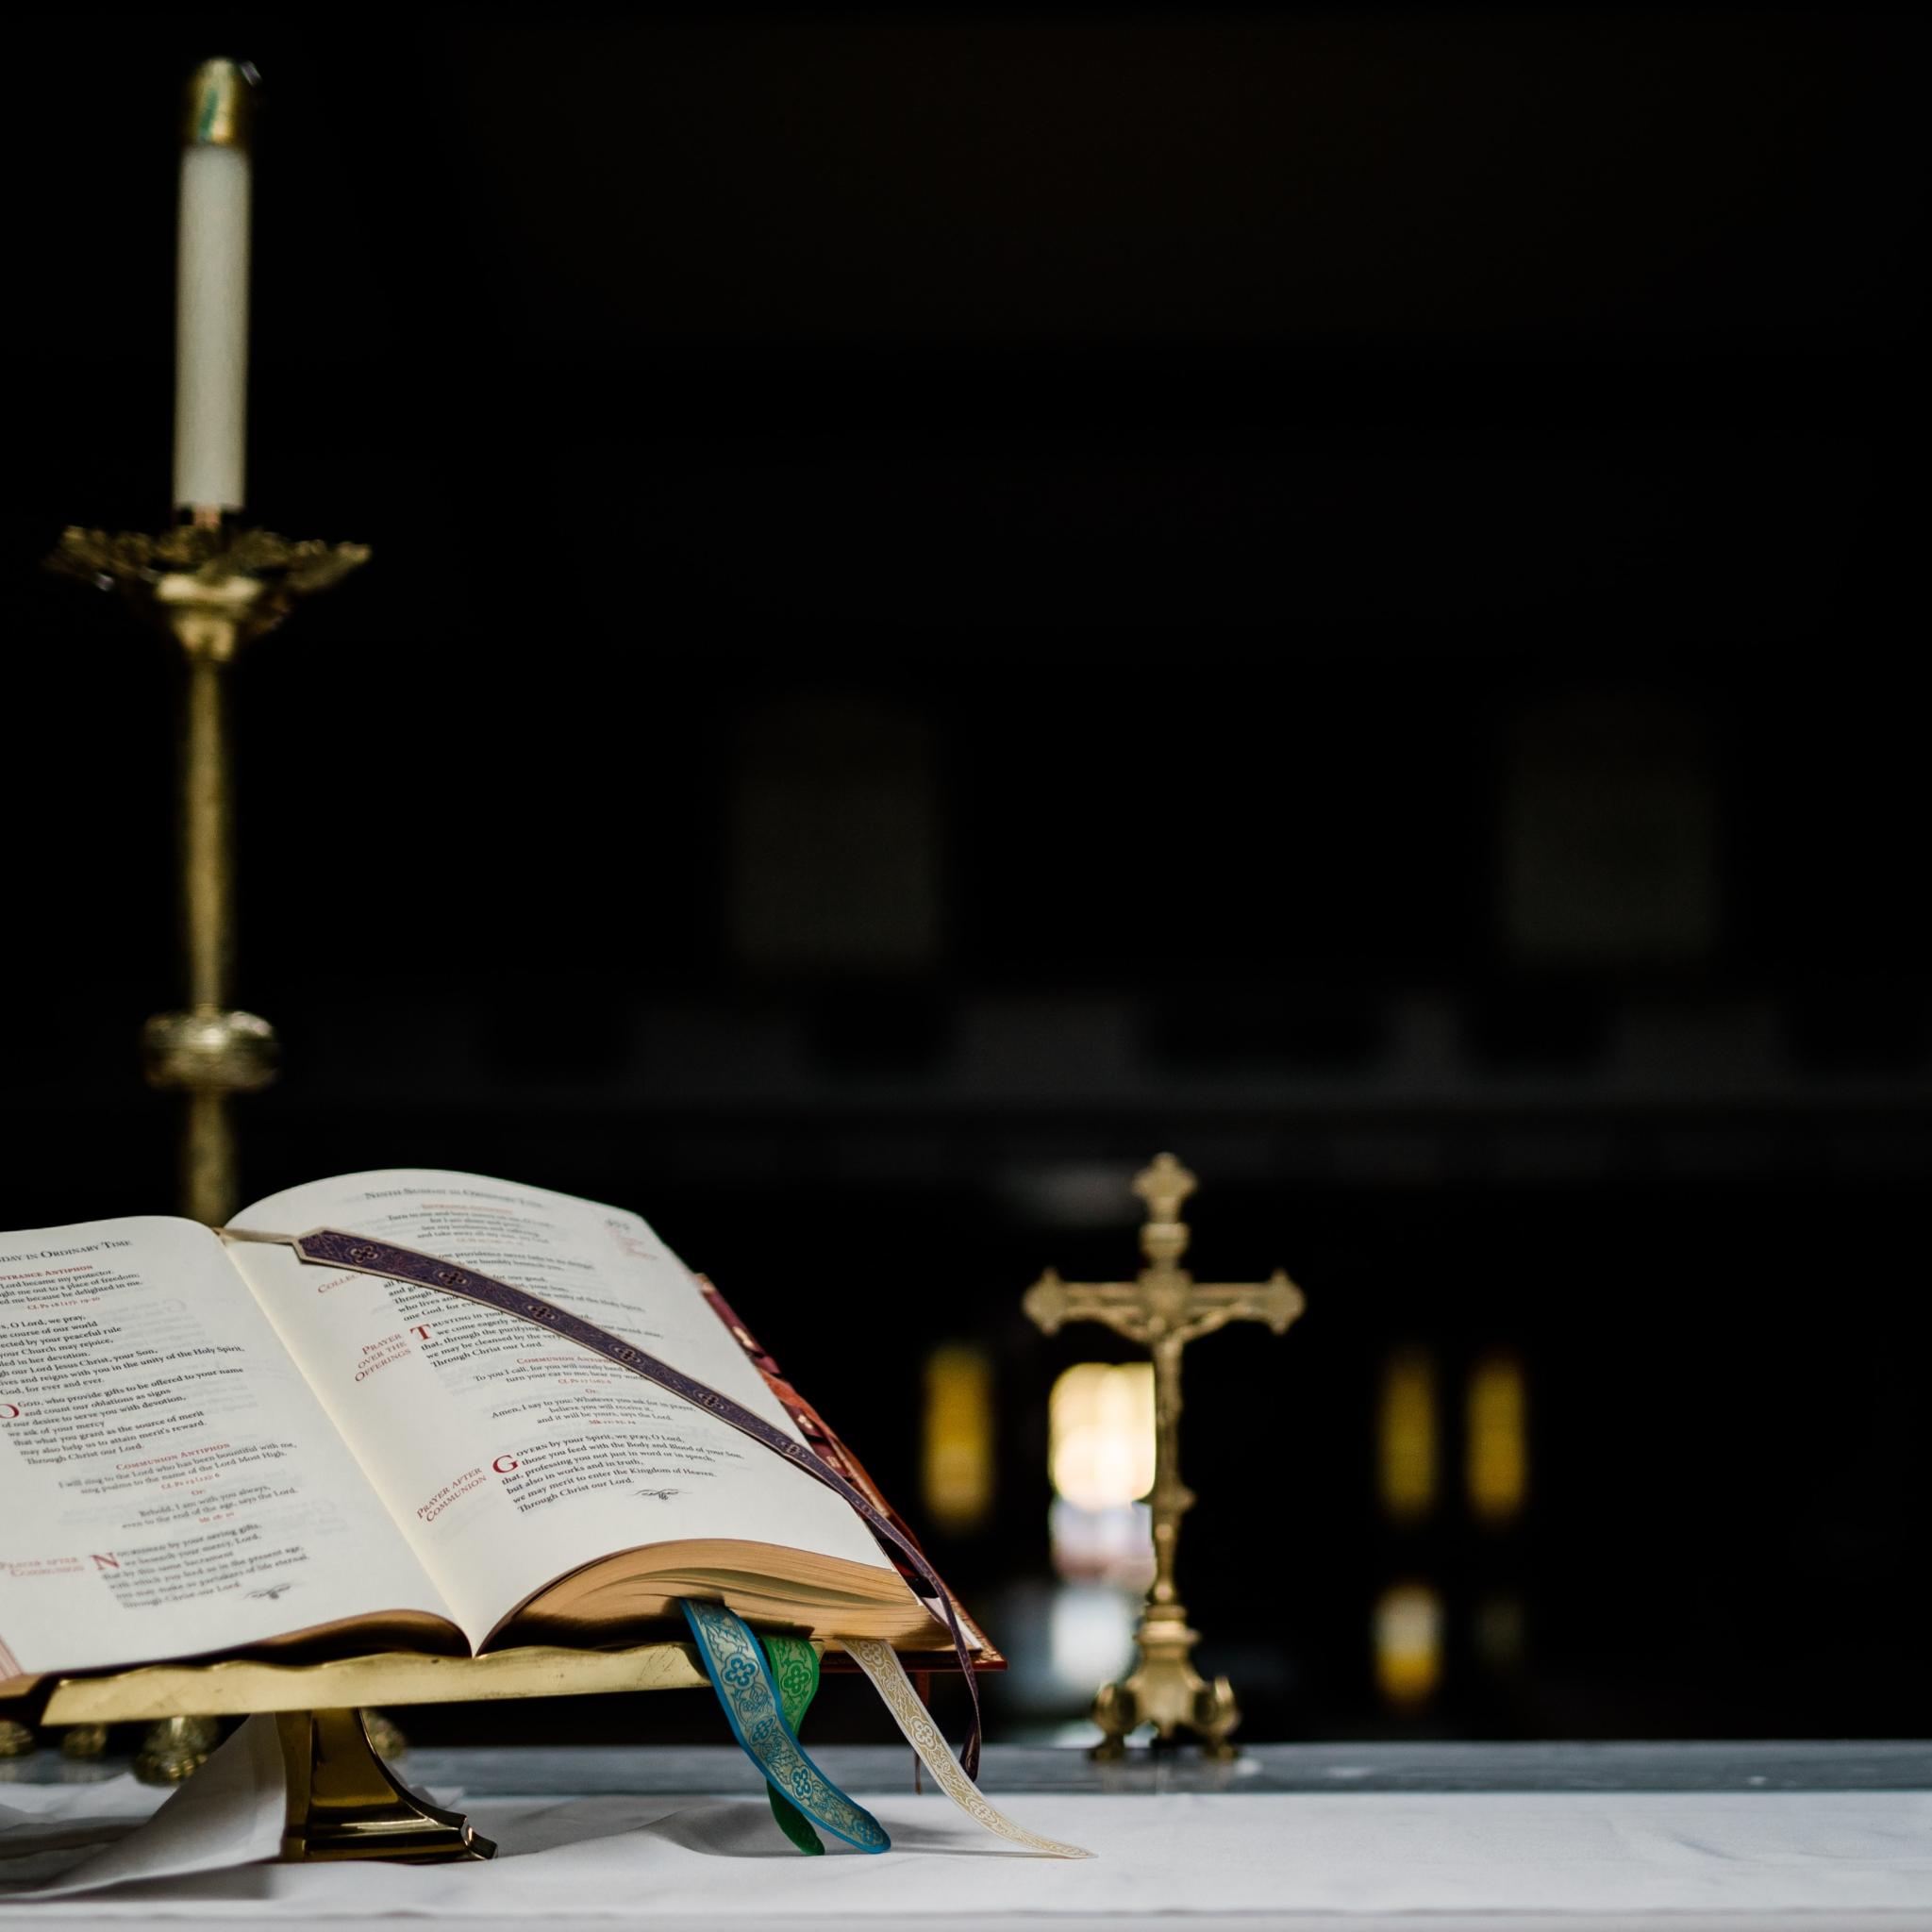 Auf einem Altar steht ein geöffnetes Buch in einem Halter, dahinter ein kleines Kreuz und mehrere große Kerzenständer